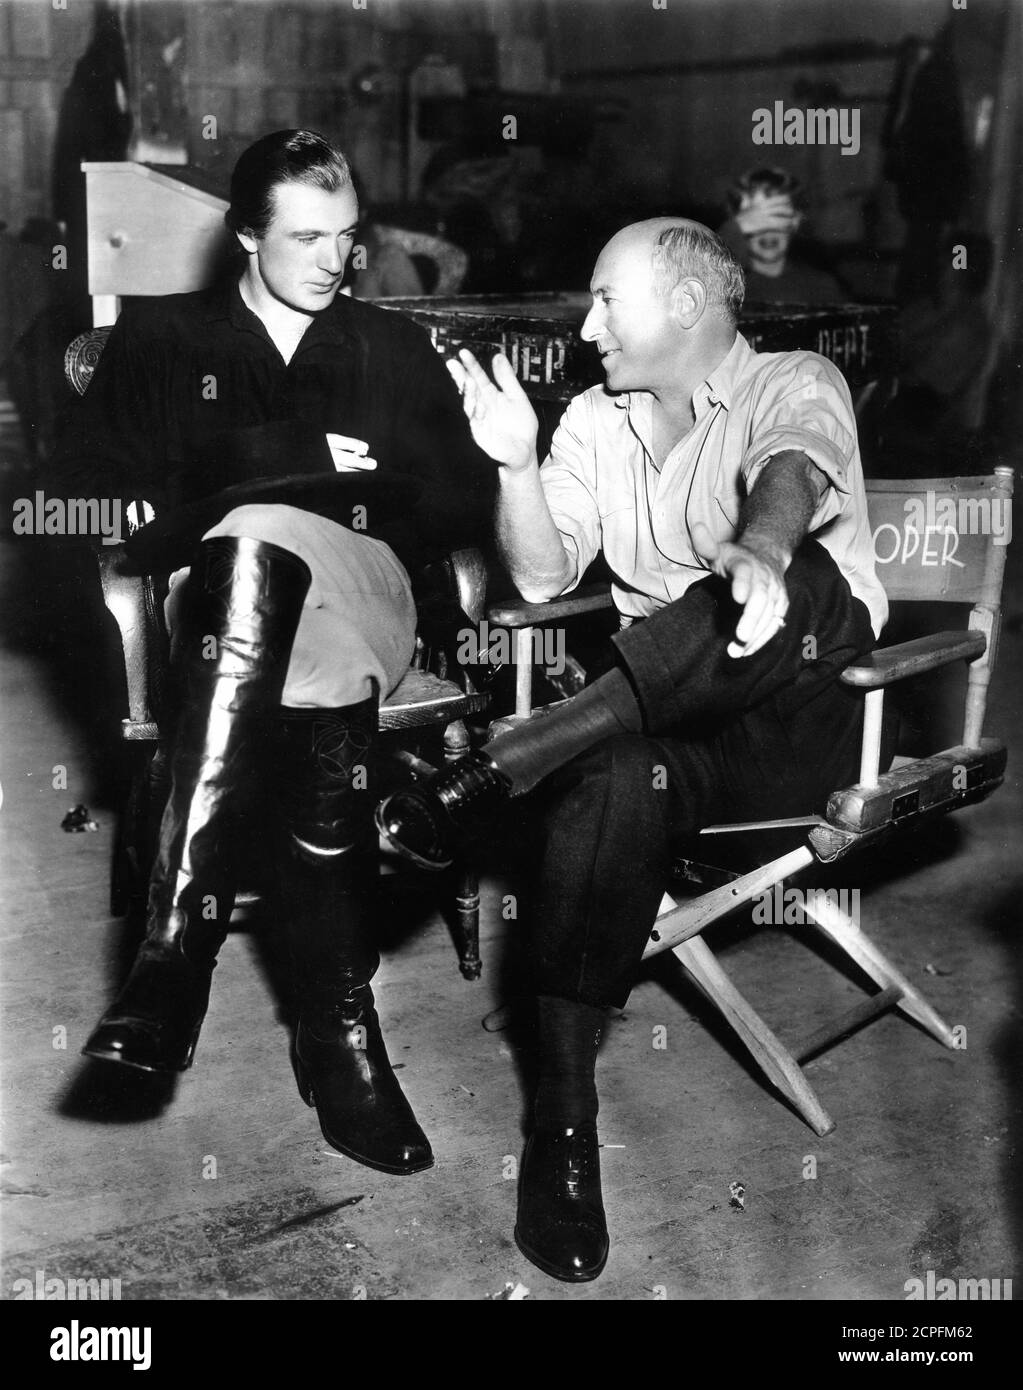 GARY COOPER in Kostüm als Wild Bill Hickok und CECIL B. DeMille am Set offen während der Dreharbeiten VON THE PLAINSMAN 1936 Regisseur CECIL B. DeMille Paramount Pictures Stockfoto